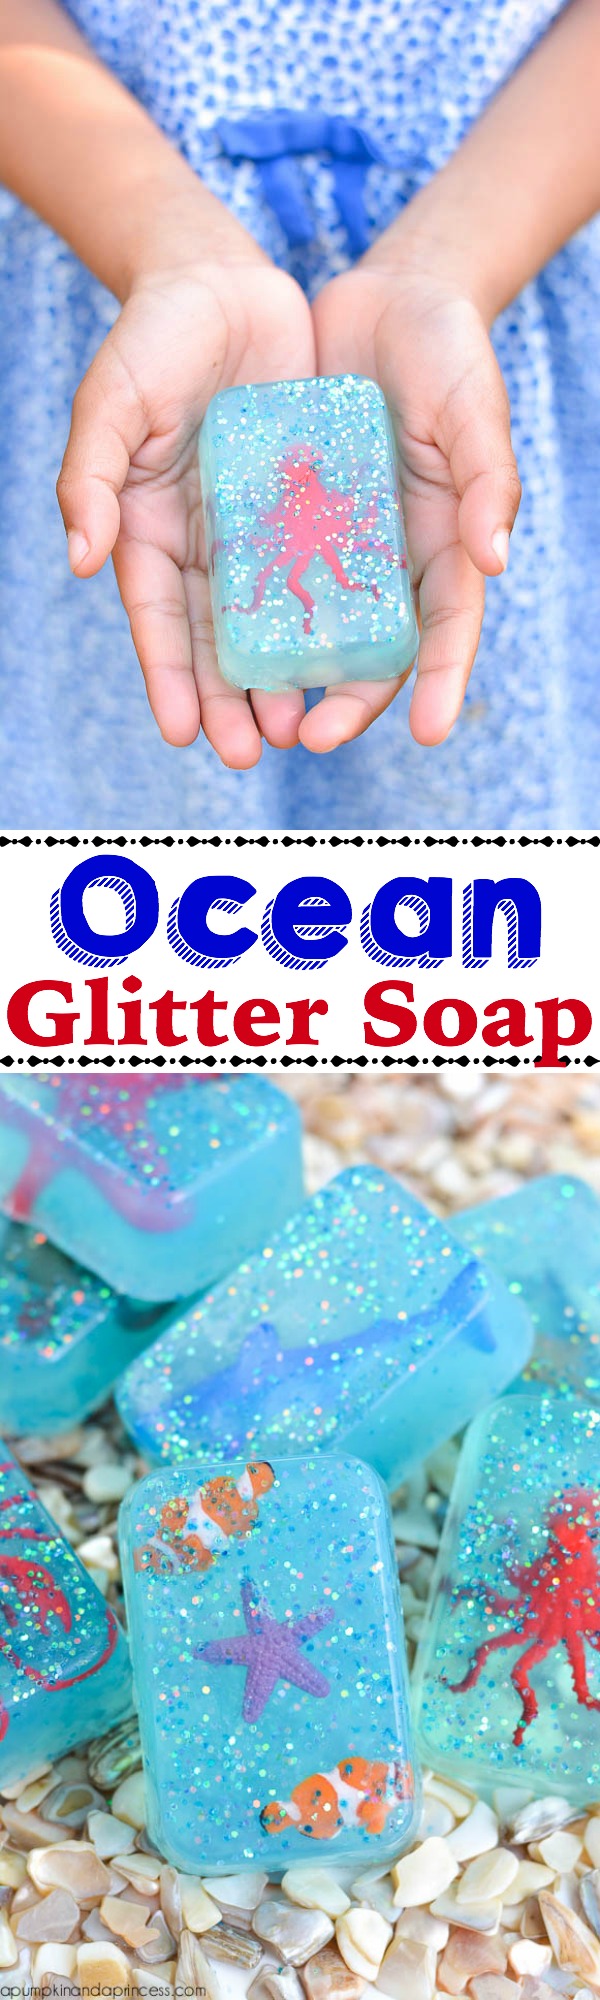 Glitter Ocean Toy Soap